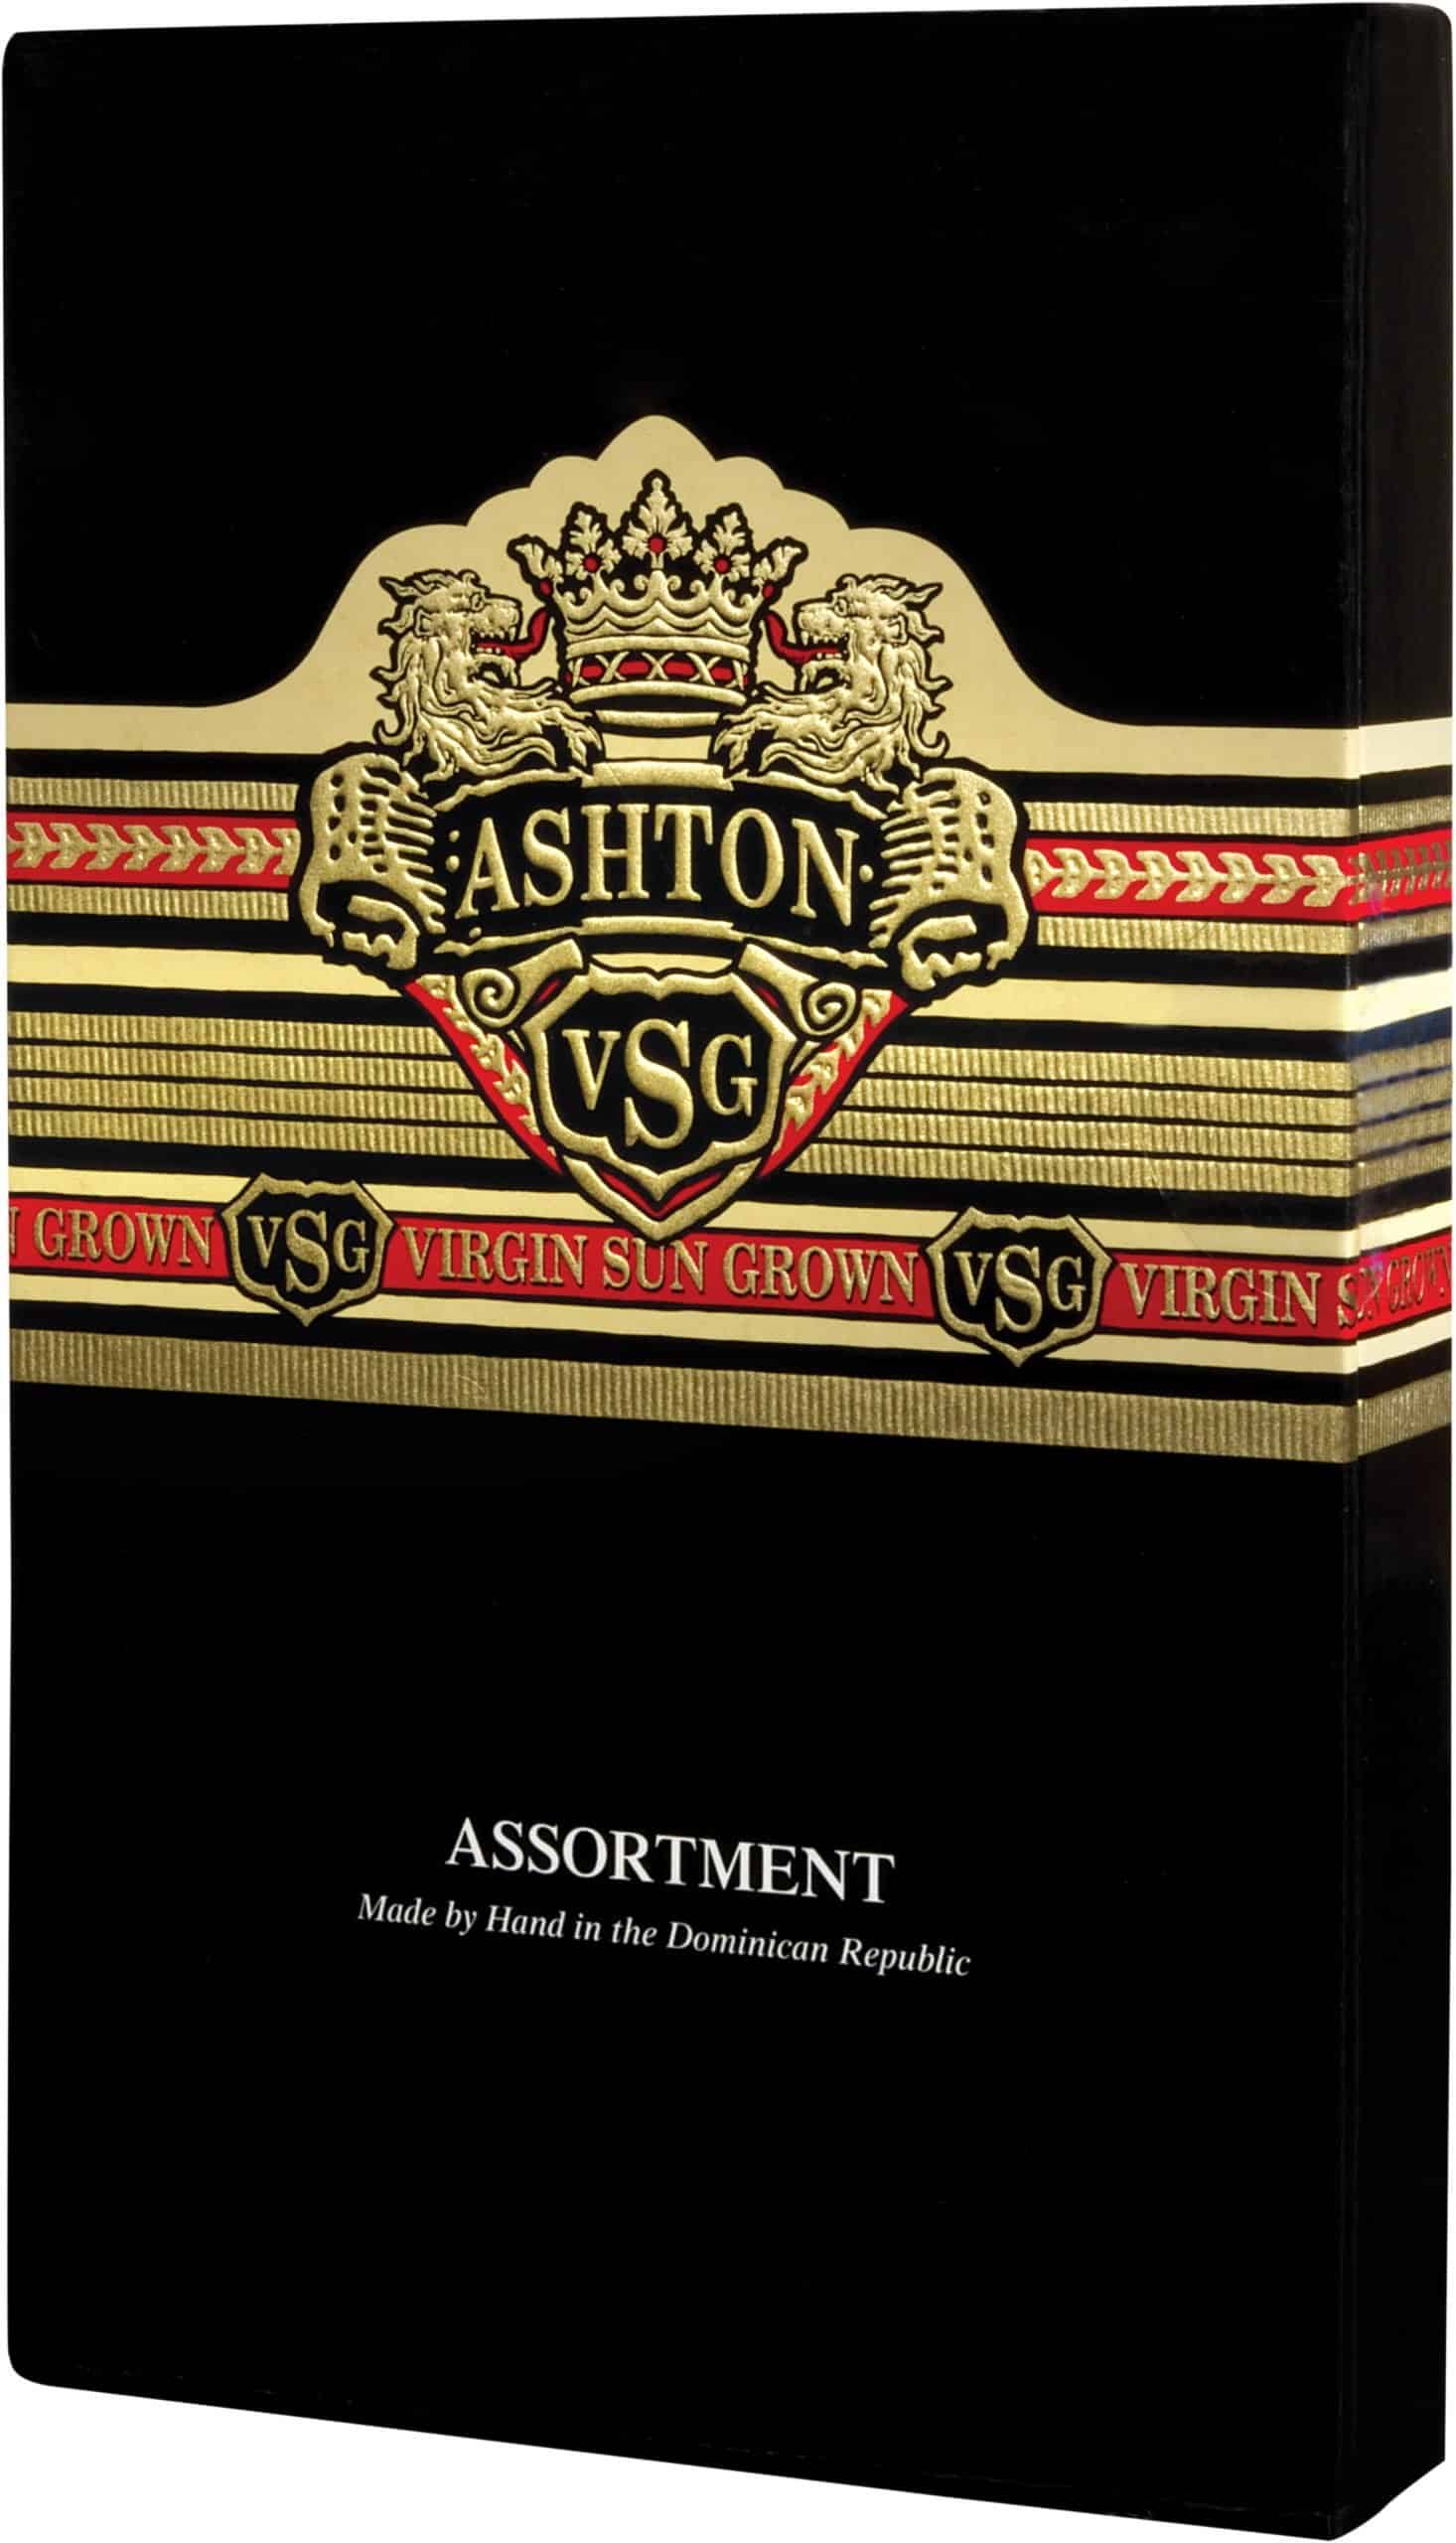 Closed box of Ashton VSG 5 count Assortment cigars